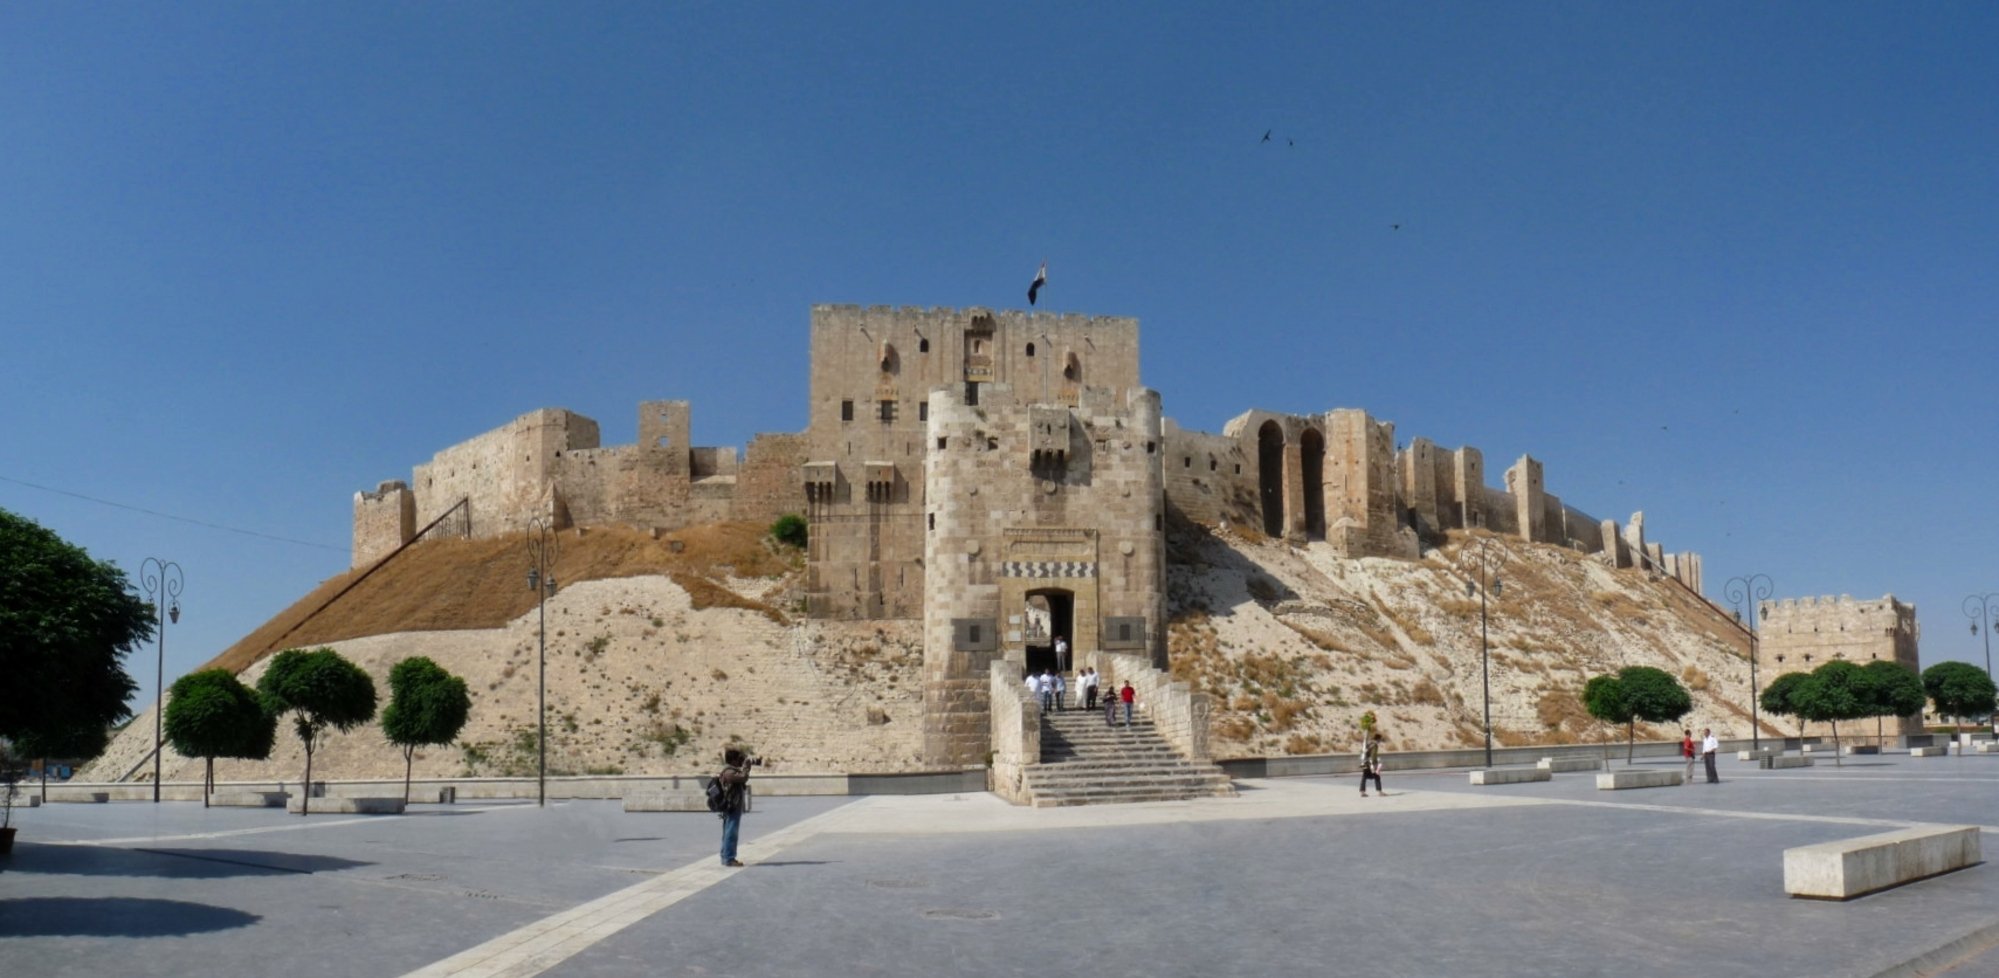 El terratrèmol a Síria provoca danys a la ciutadella d'Alep, patrimoni de la humanitat per la Unesco